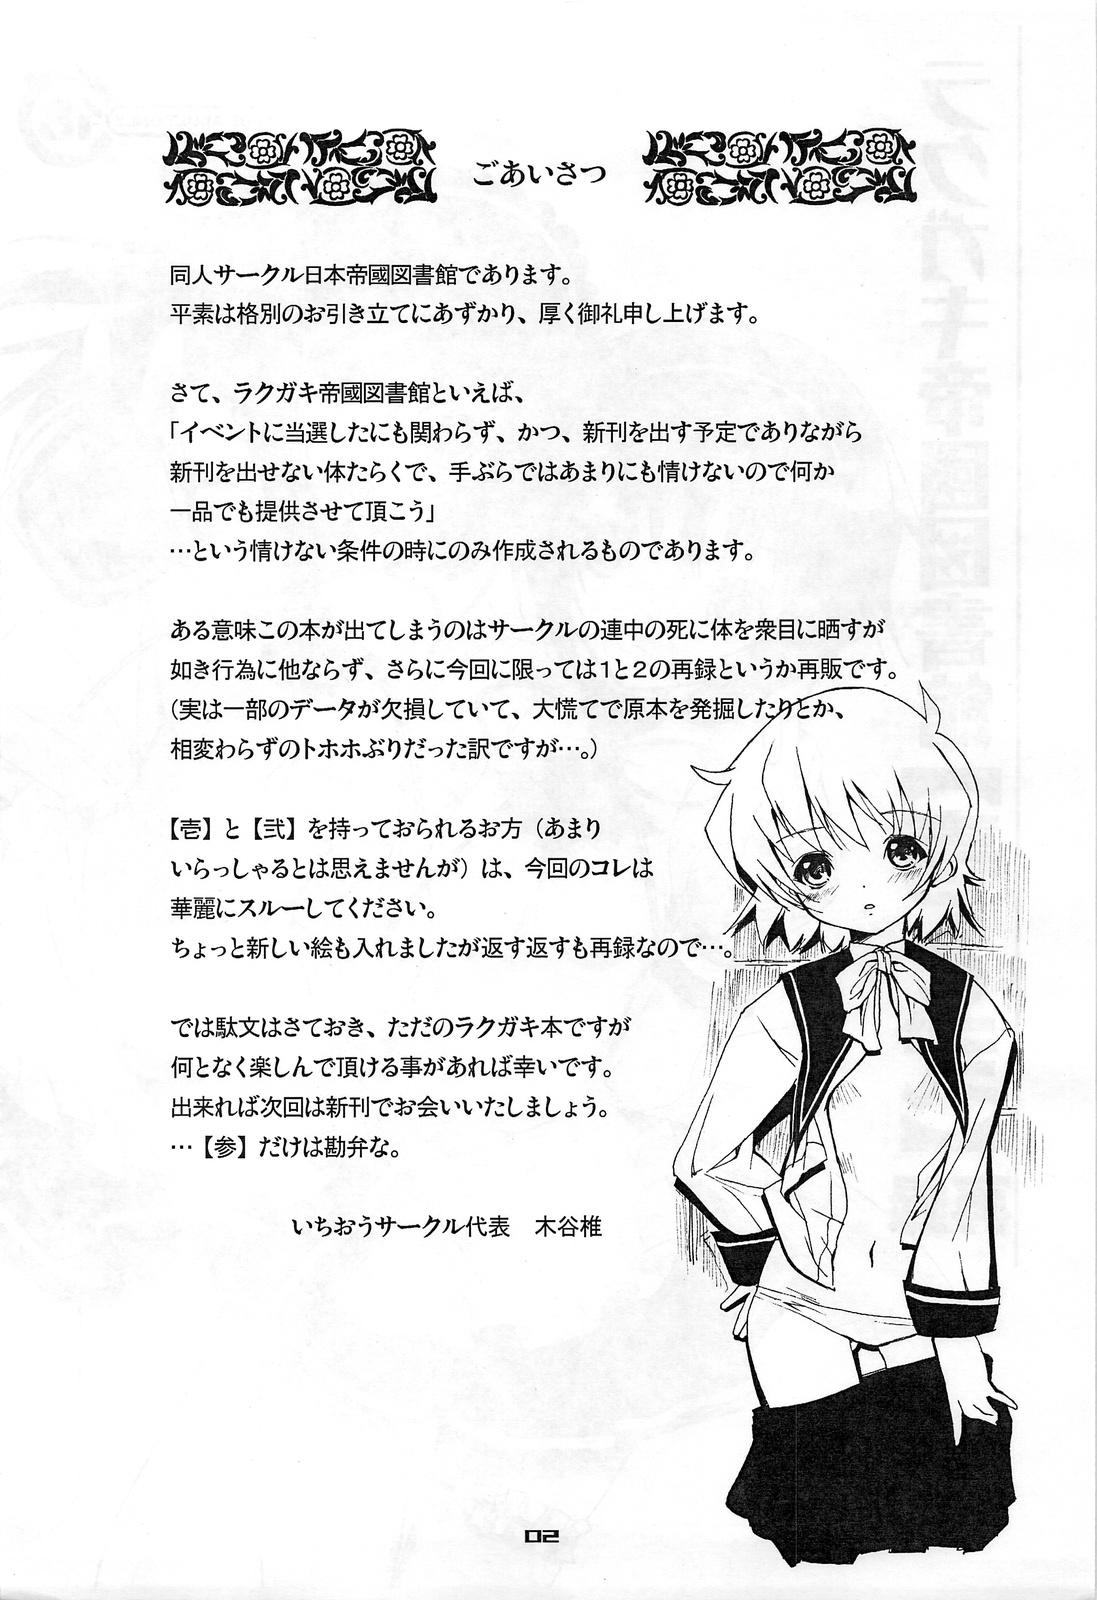 Jerk Off Rakugaki Teikoku Toshokan "Ichi to Ni" Sairoku Gay Domination - Page 2